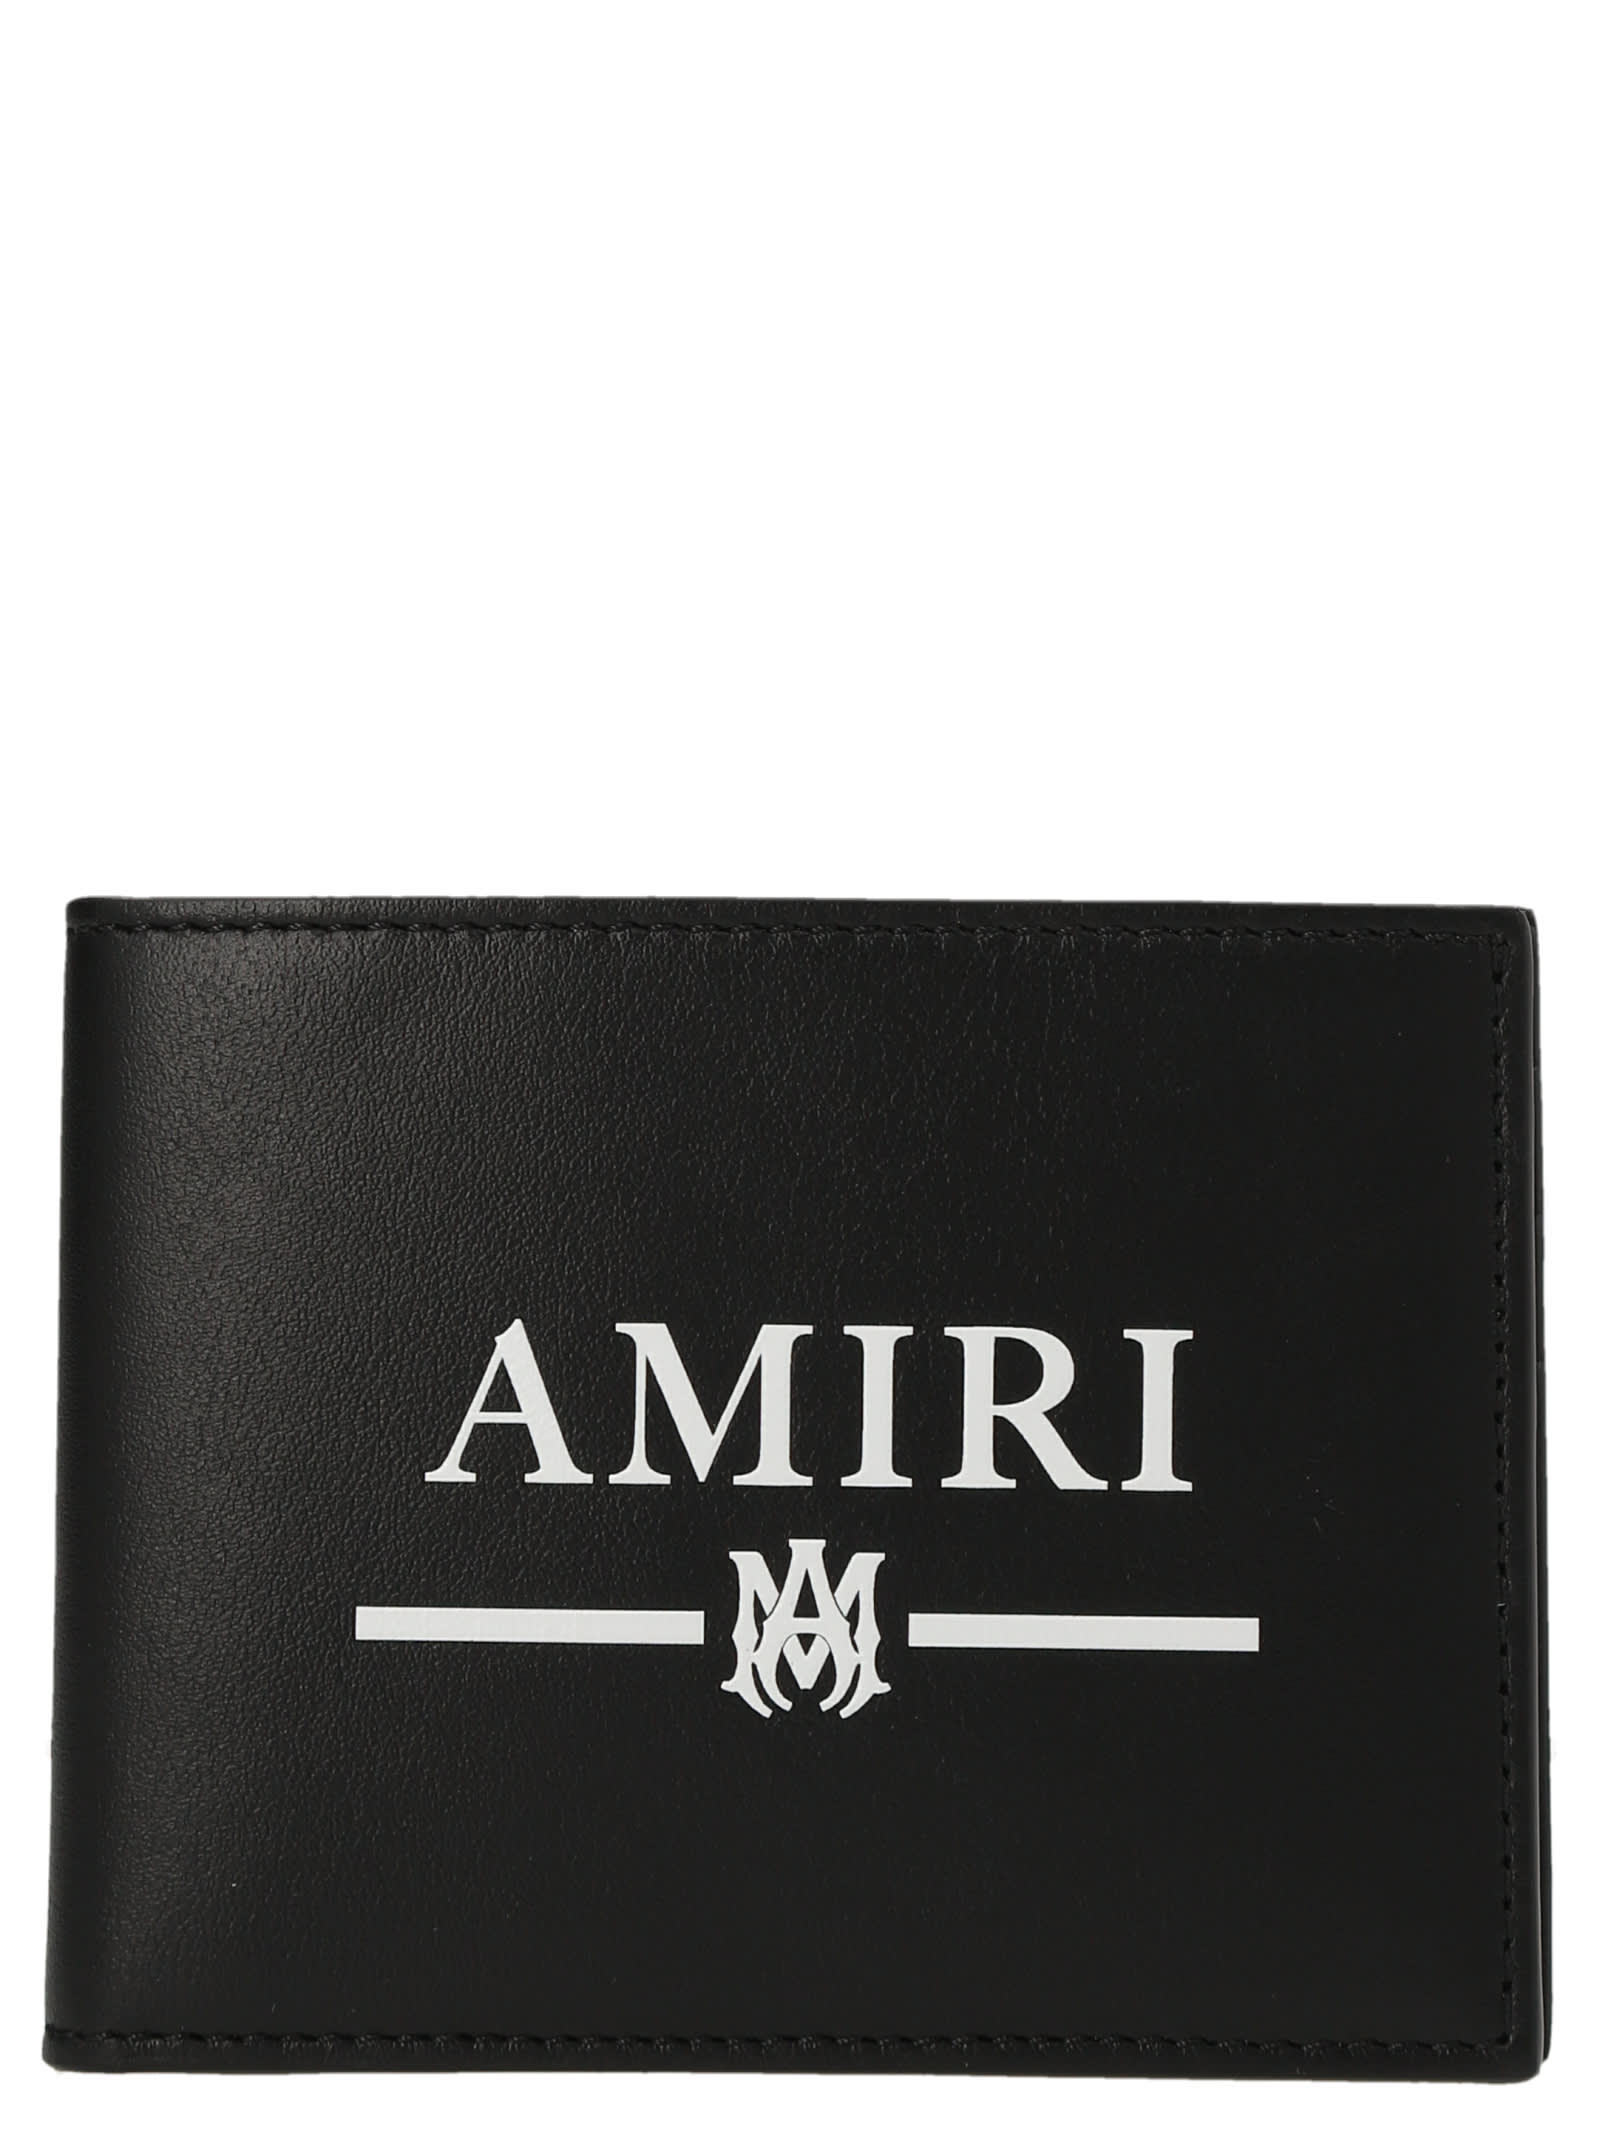 AMIRI Printed Logo Wallet